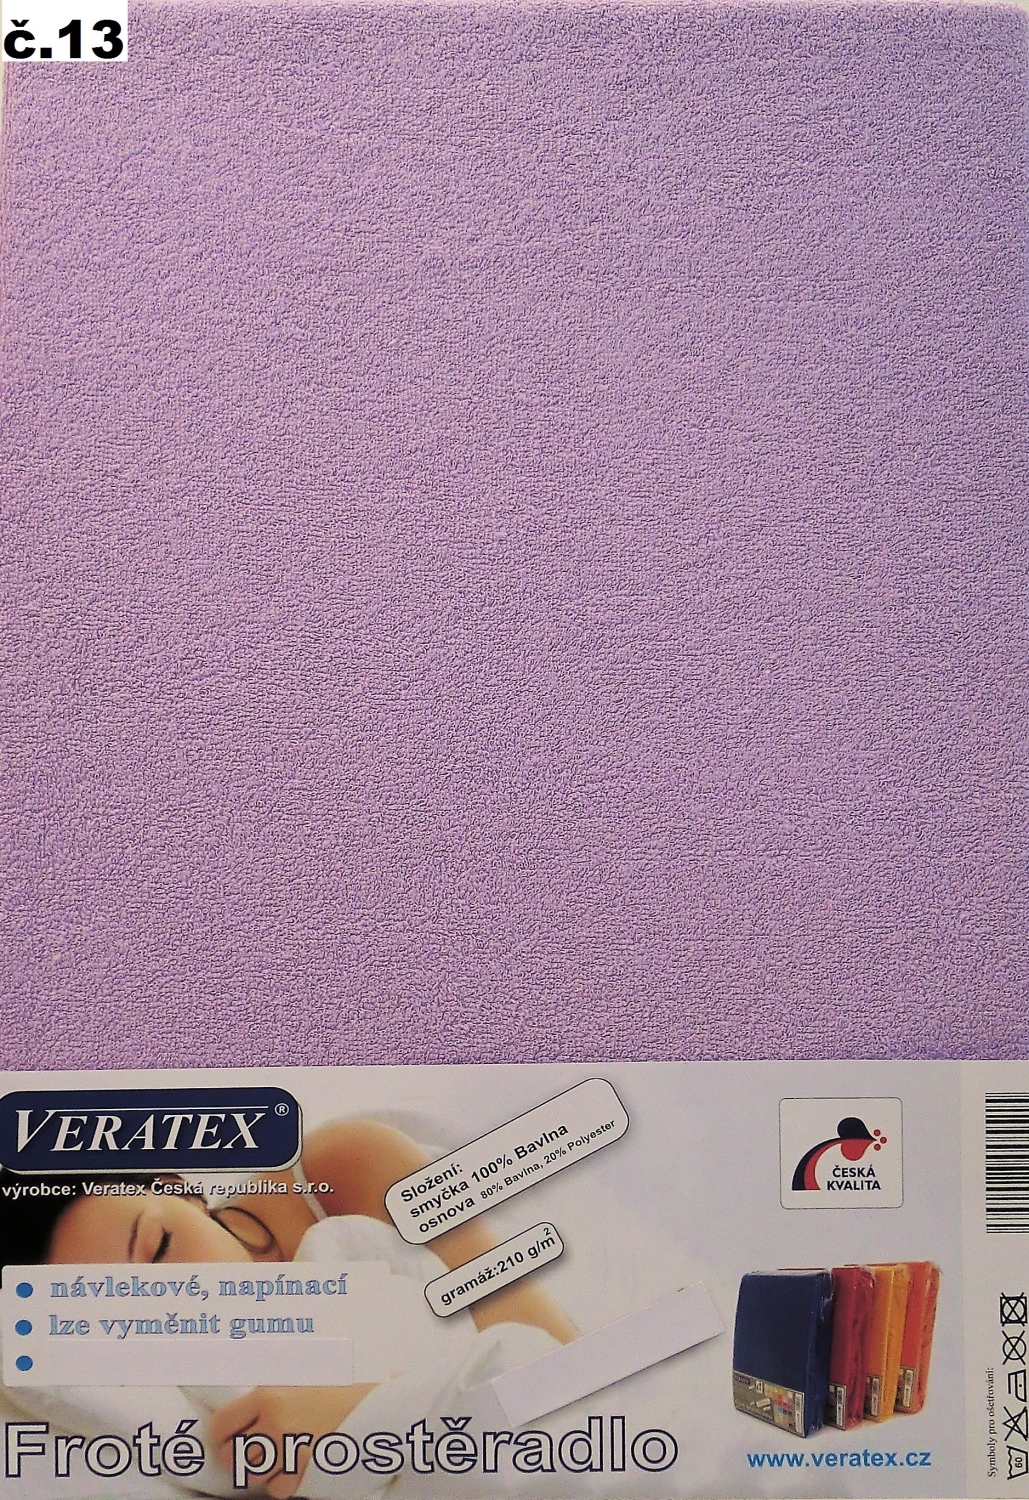 Veratex Froté prostěradlo na masážní lůžko 60x190 lehátko (č.13-fialková) 60 x 190 cm